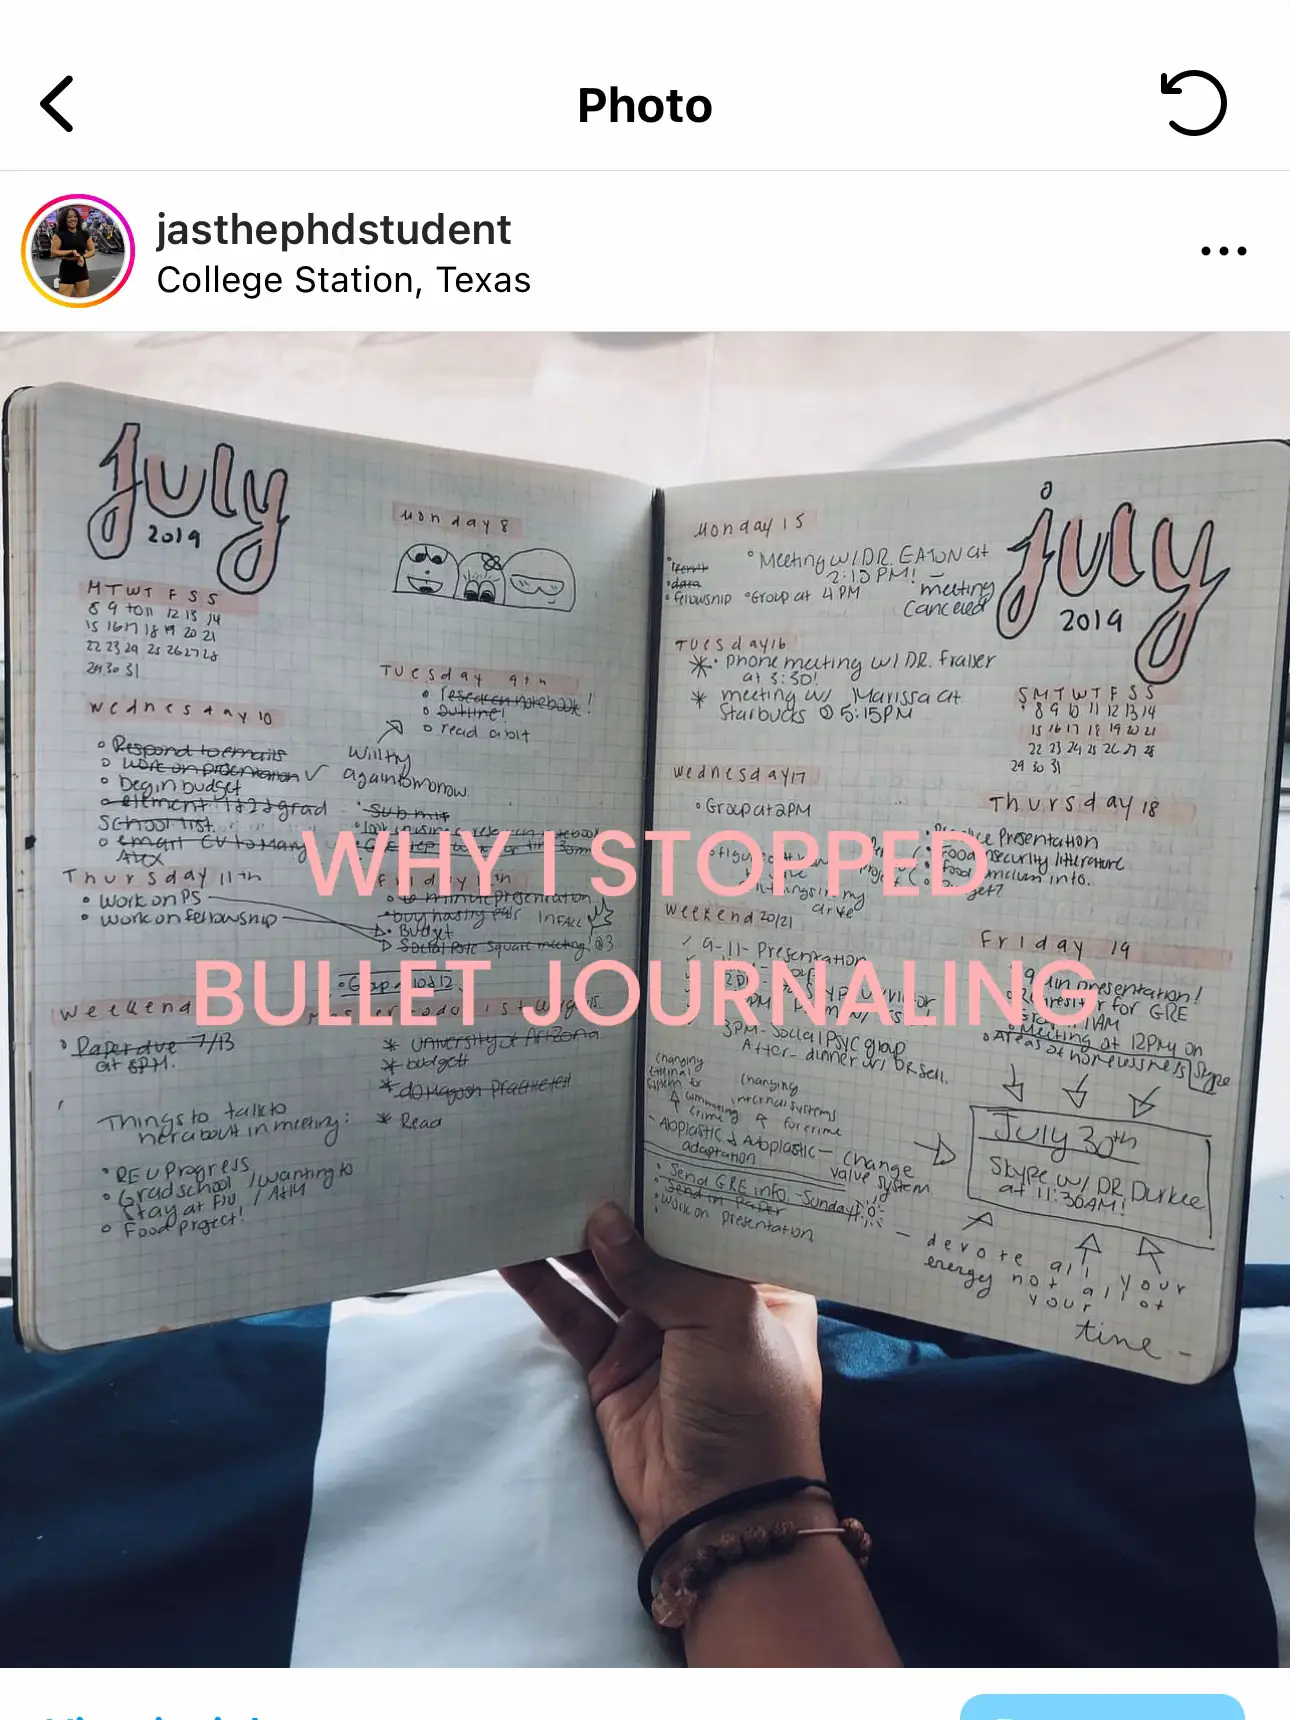 Digital Bullet Journaling 101: How To Start Digital Bullet Journal In 2023